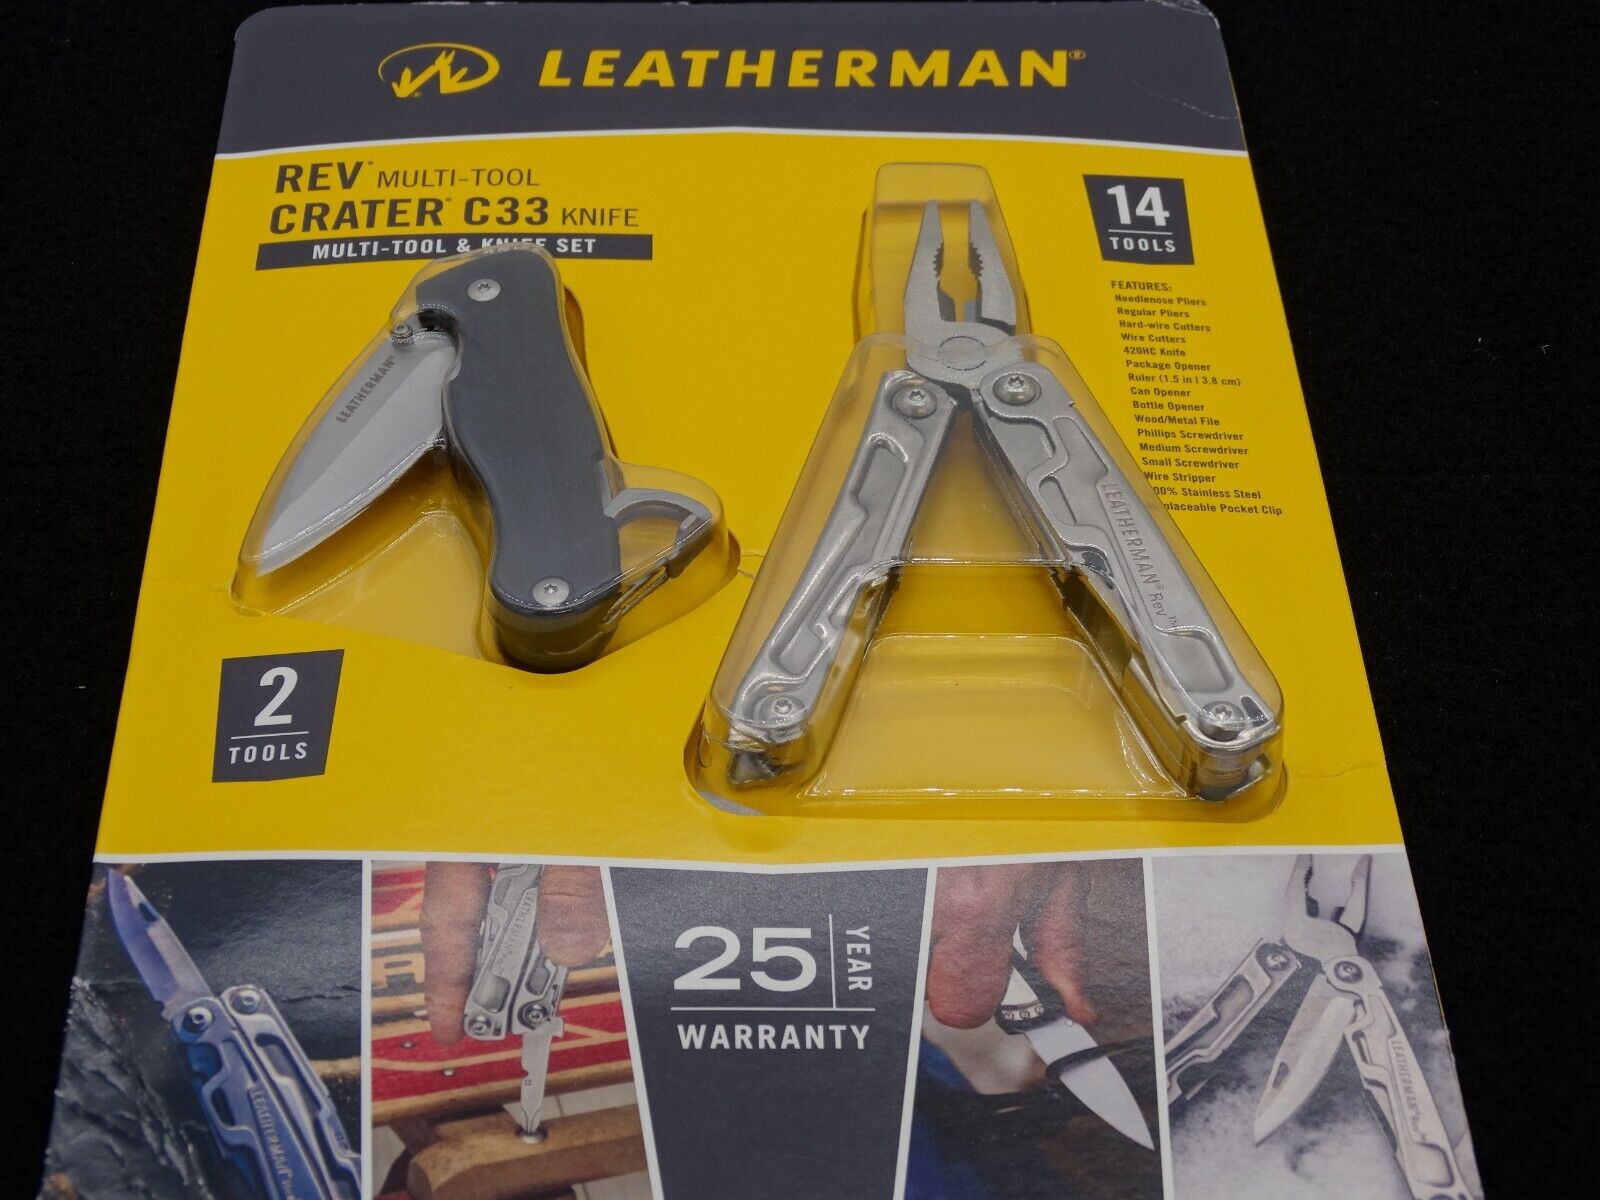 Leatherman REV Multi-tool & Knife SET – Peito Y Cabezon Ferreteria